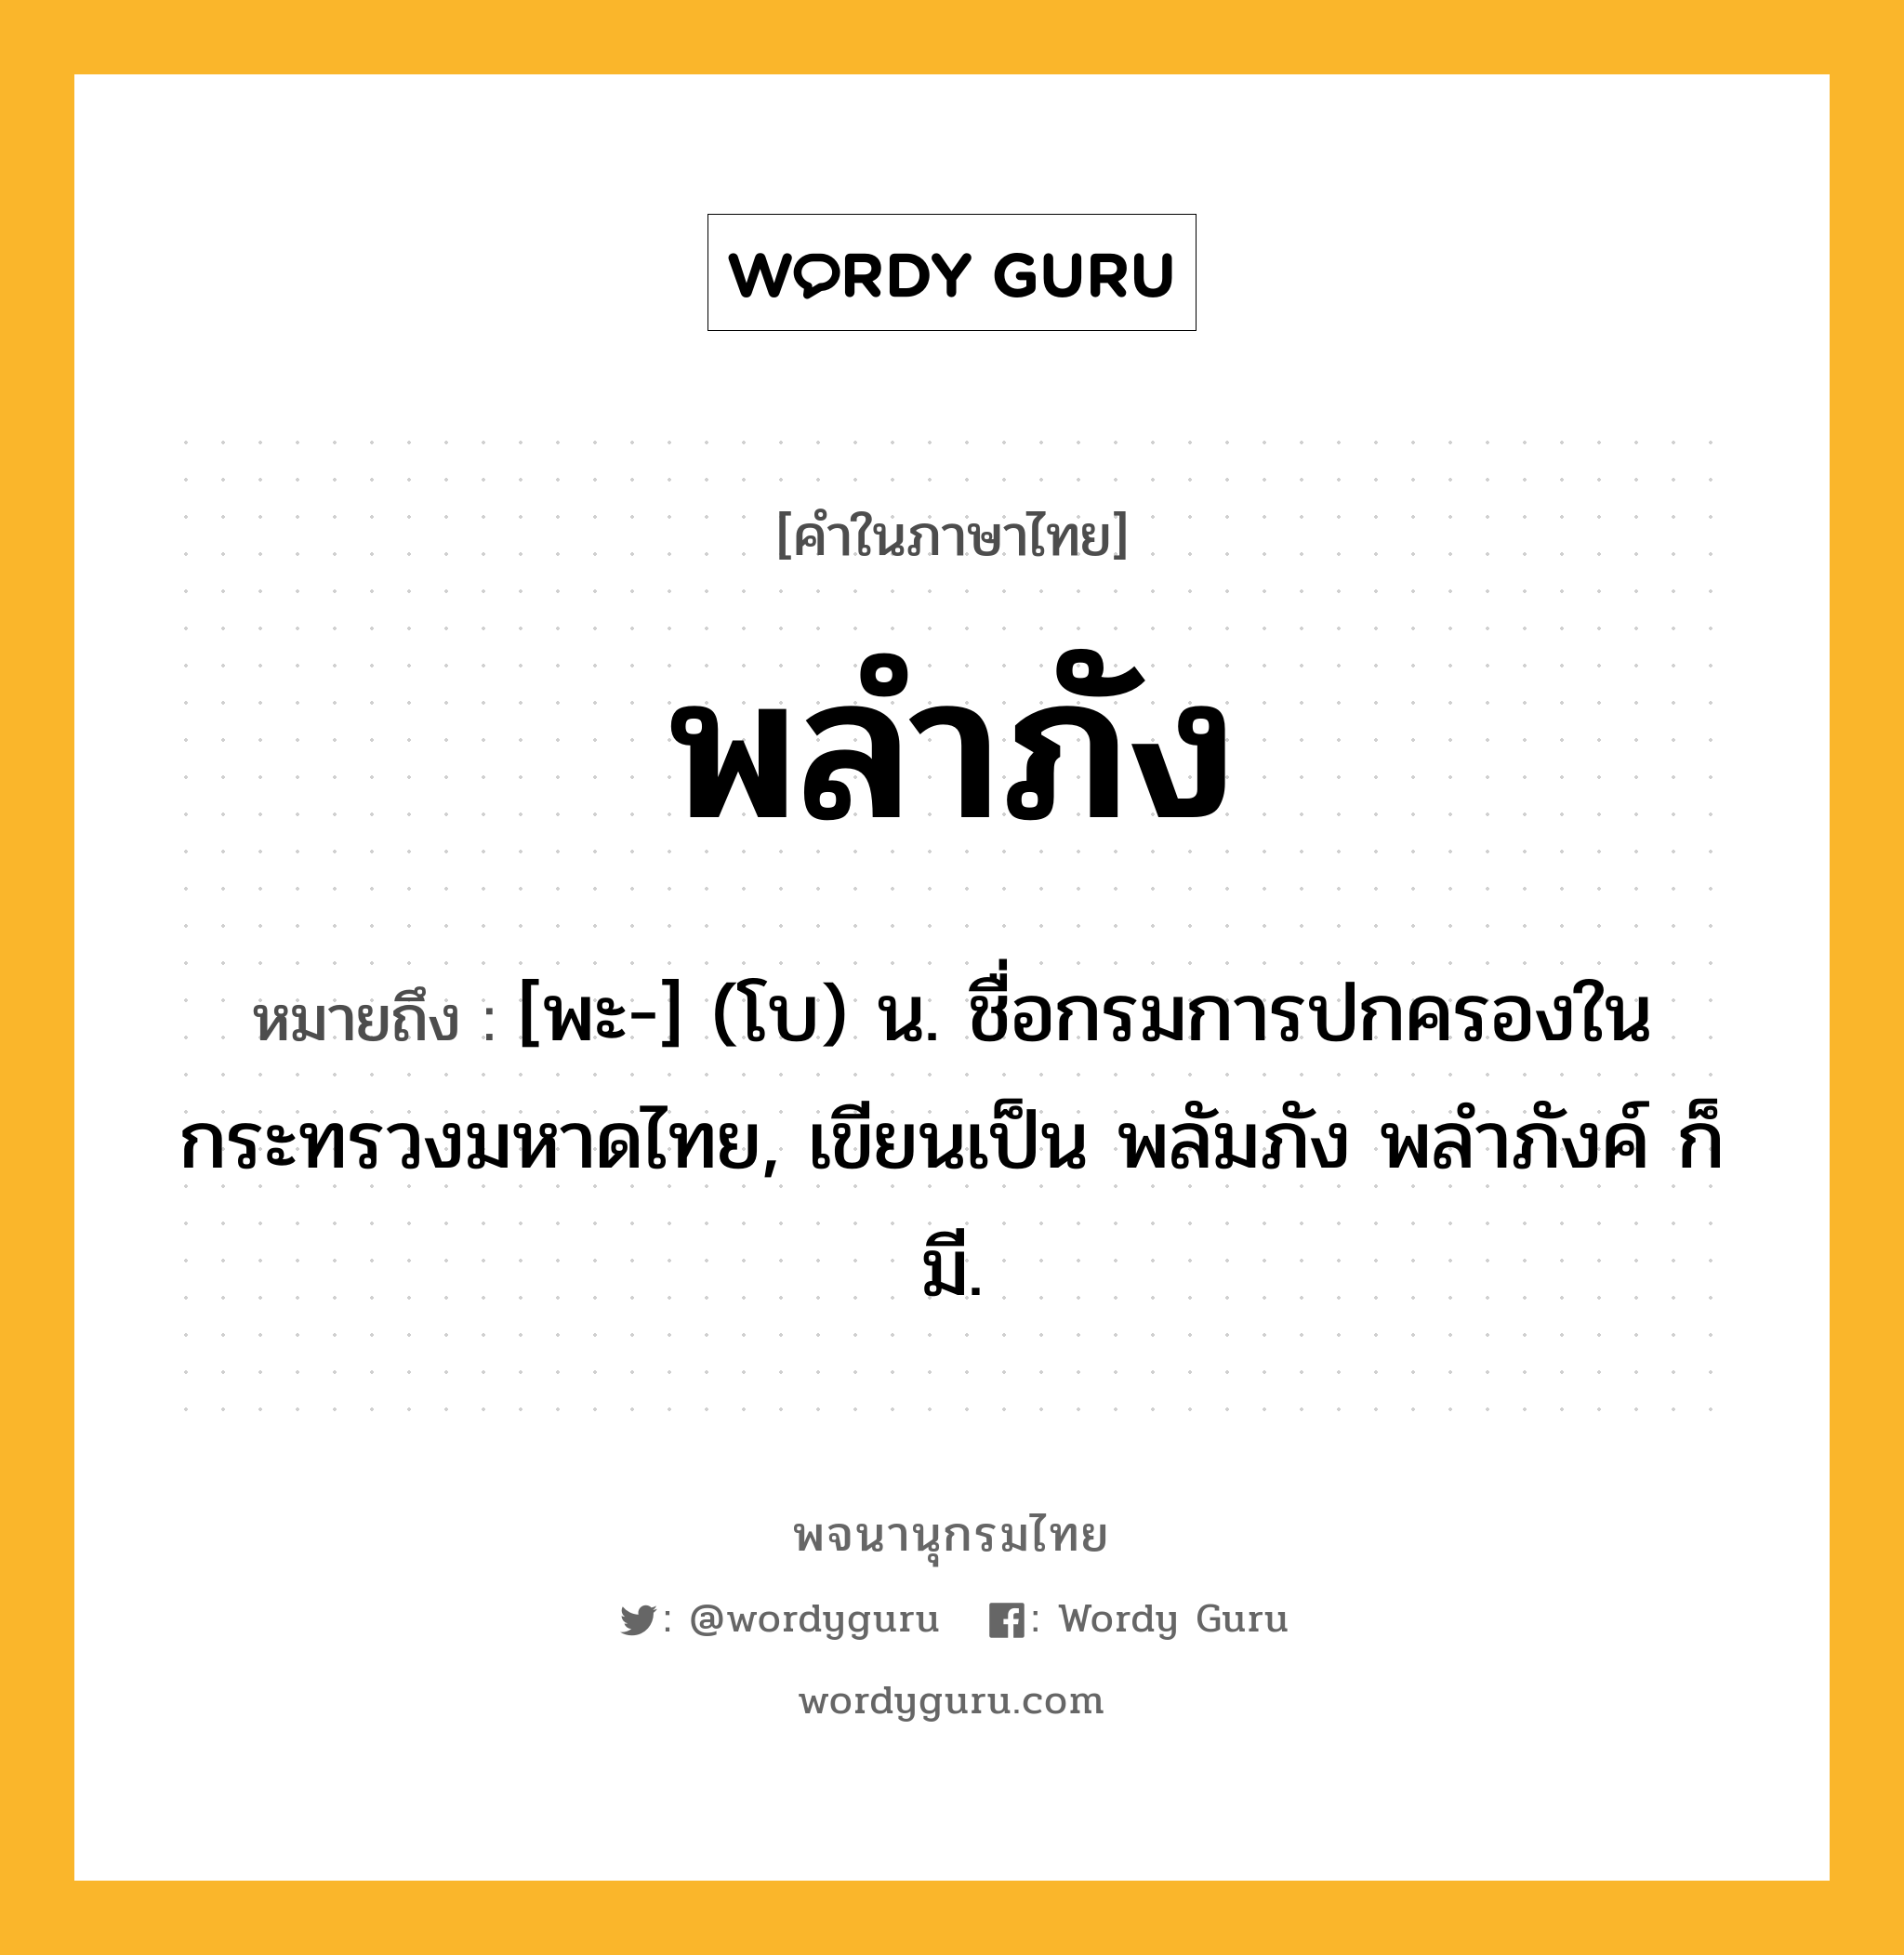 พลำภัง ความหมาย หมายถึงอะไร?, คำในภาษาไทย พลำภัง หมายถึง [พะ-] (โบ) น. ชื่อกรมการปกครองในกระทรวงมหาดไทย, เขียนเป็น พลัมภัง พลําภังค์ ก็มี.